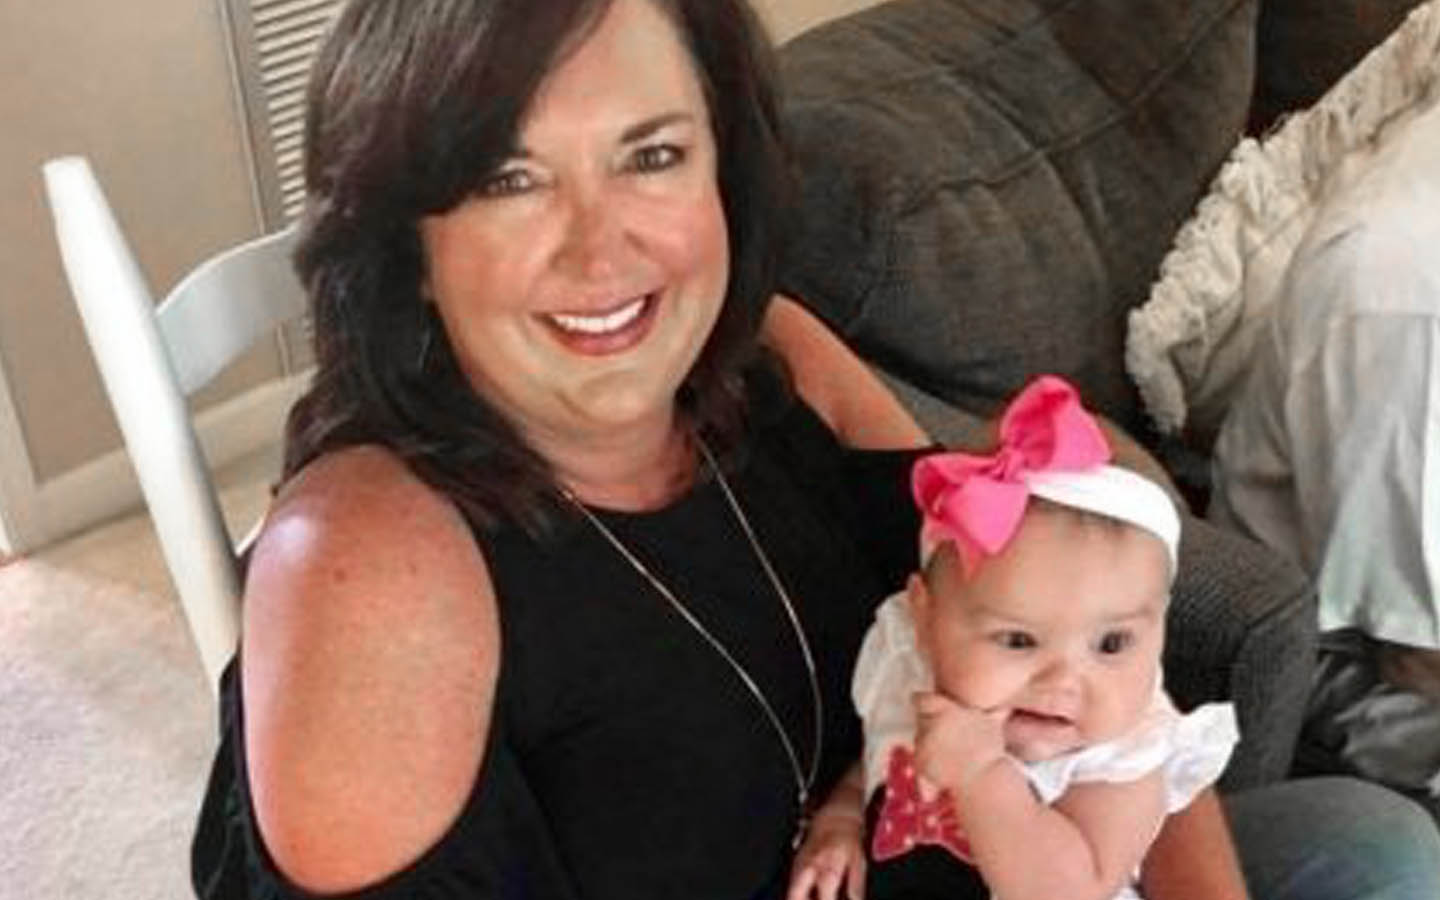 Angie, porteuse d’un implant, pose avec un bébé pour une photo